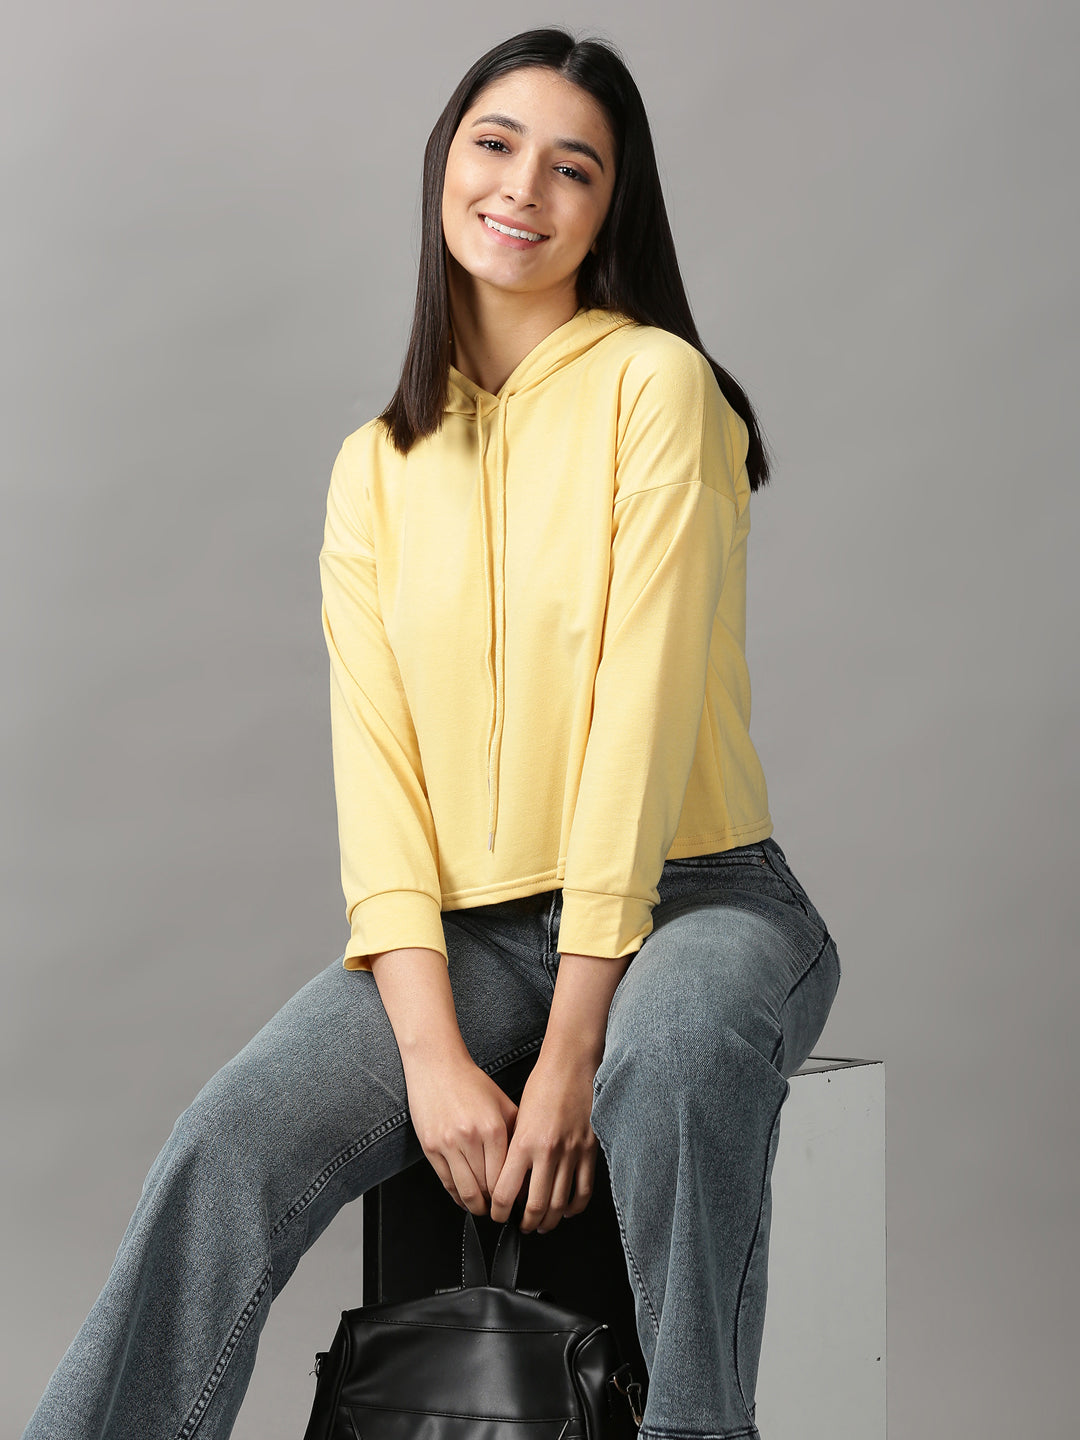 Women's Yellow Solid Crop Top